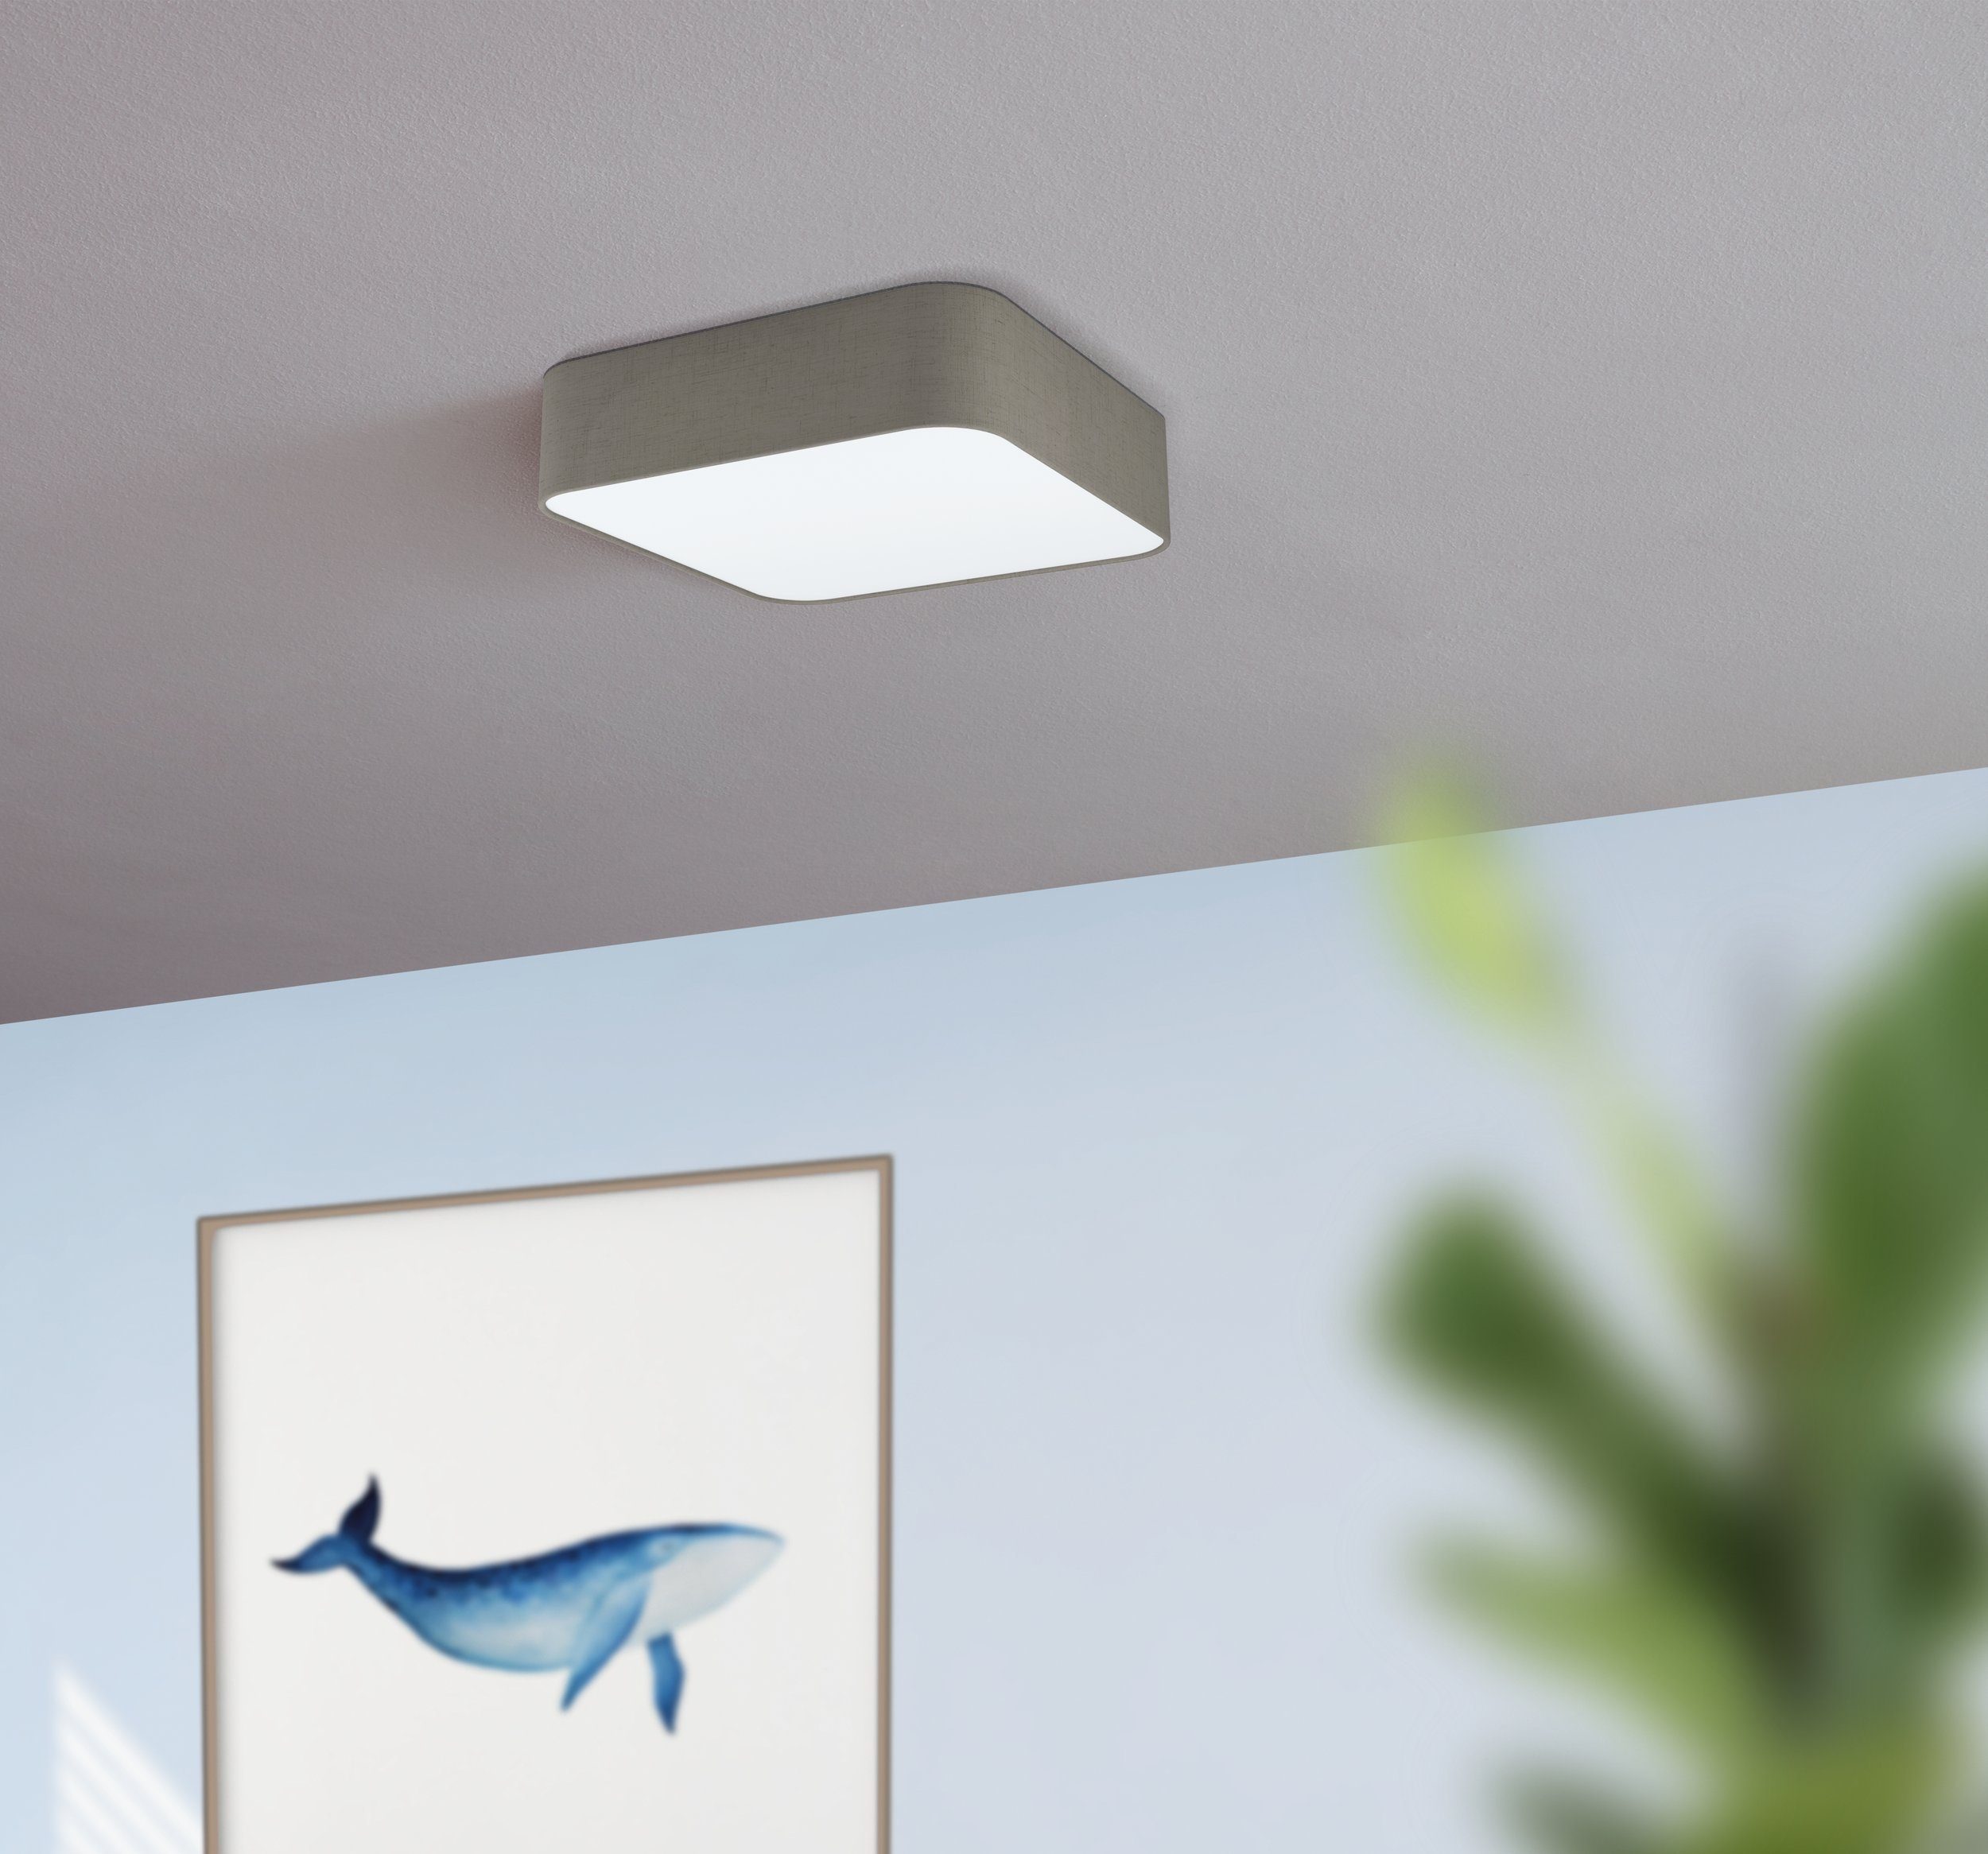 EGLO LED Deckenleuchte Pasteri square, Decke, Flurlampe Küchenlampe, E27 Leuchtmittel Wohnzimmerlampe Deckenleuchte, exklusive